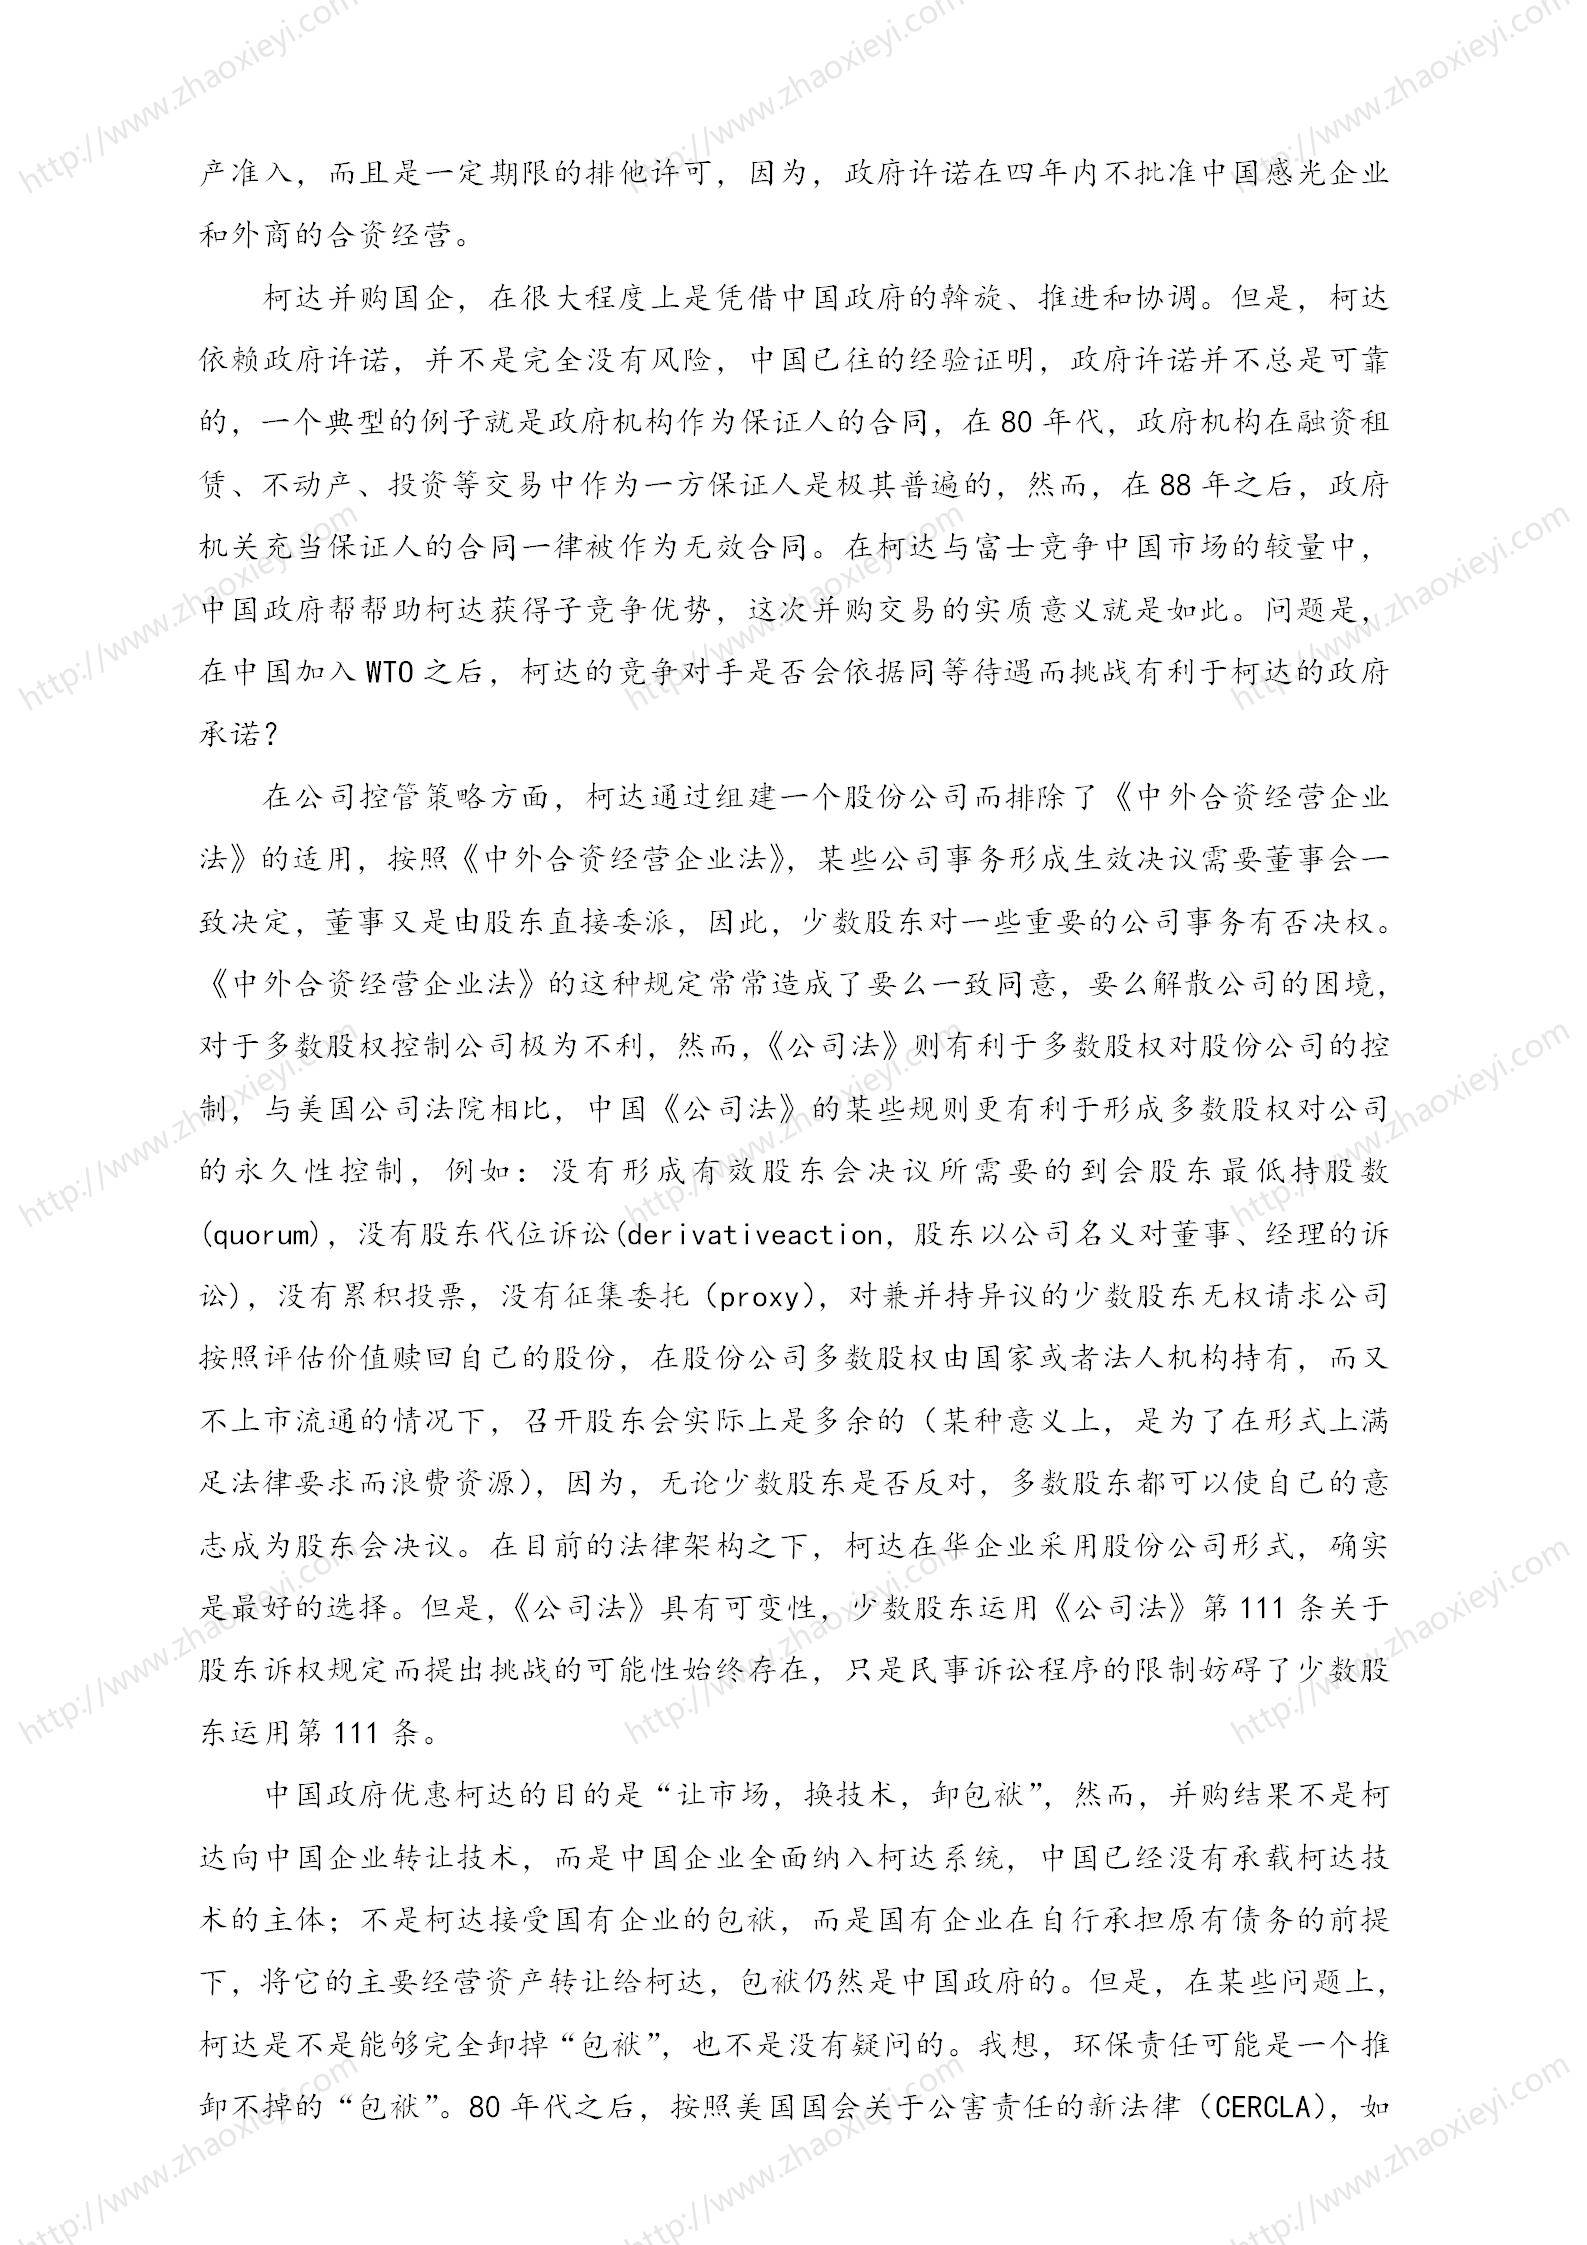 中国企业并购经典案例_161.jpg